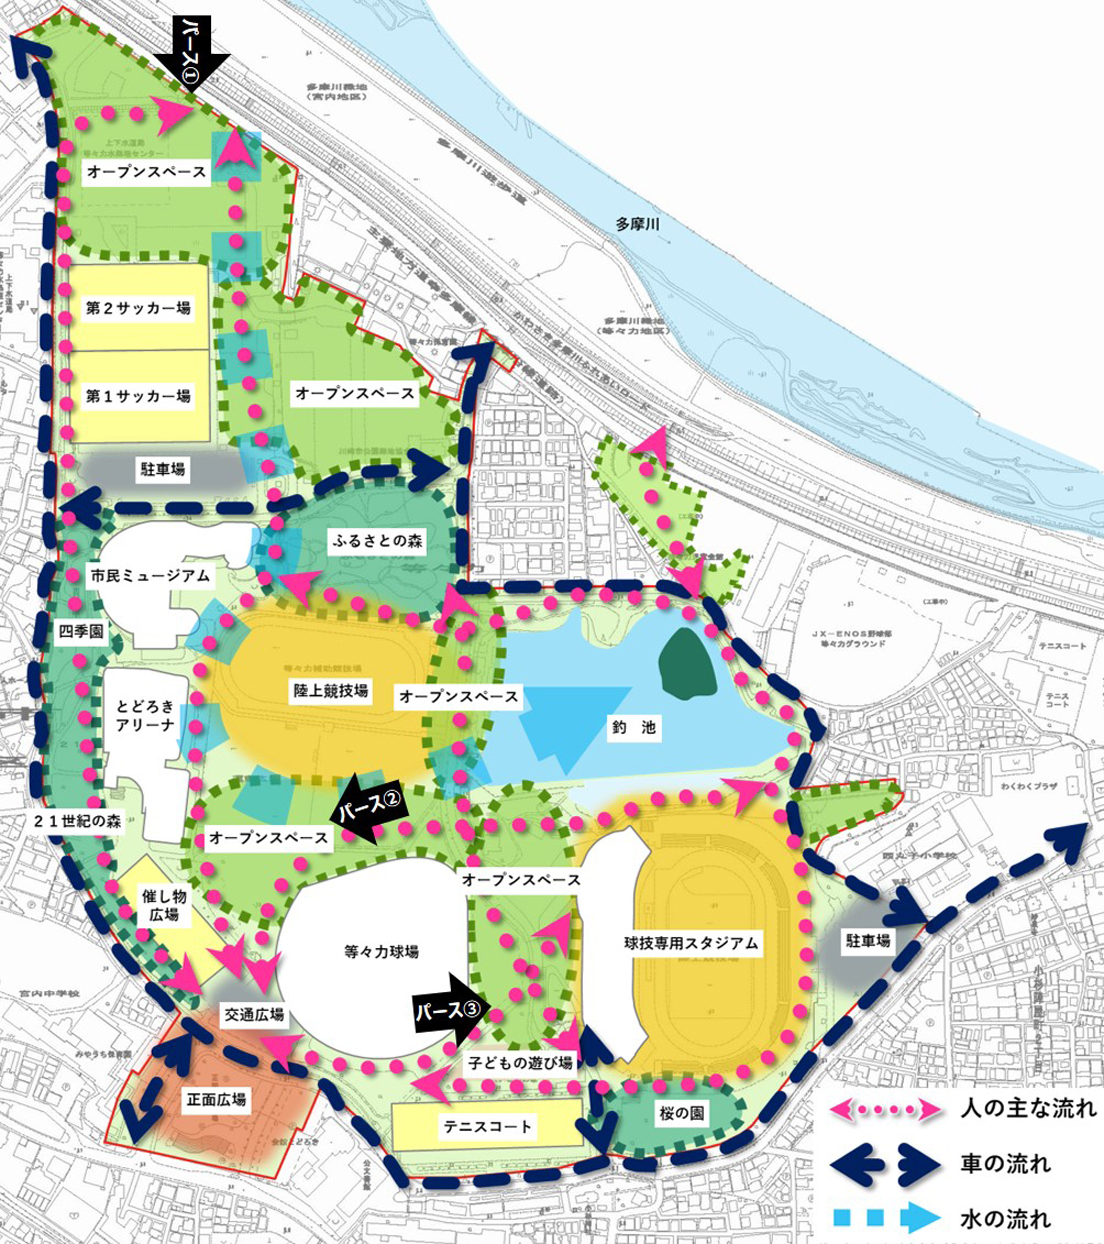 川崎市 等々力緑地再編整備実施計画改定骨子 案 の市民意見の募集について